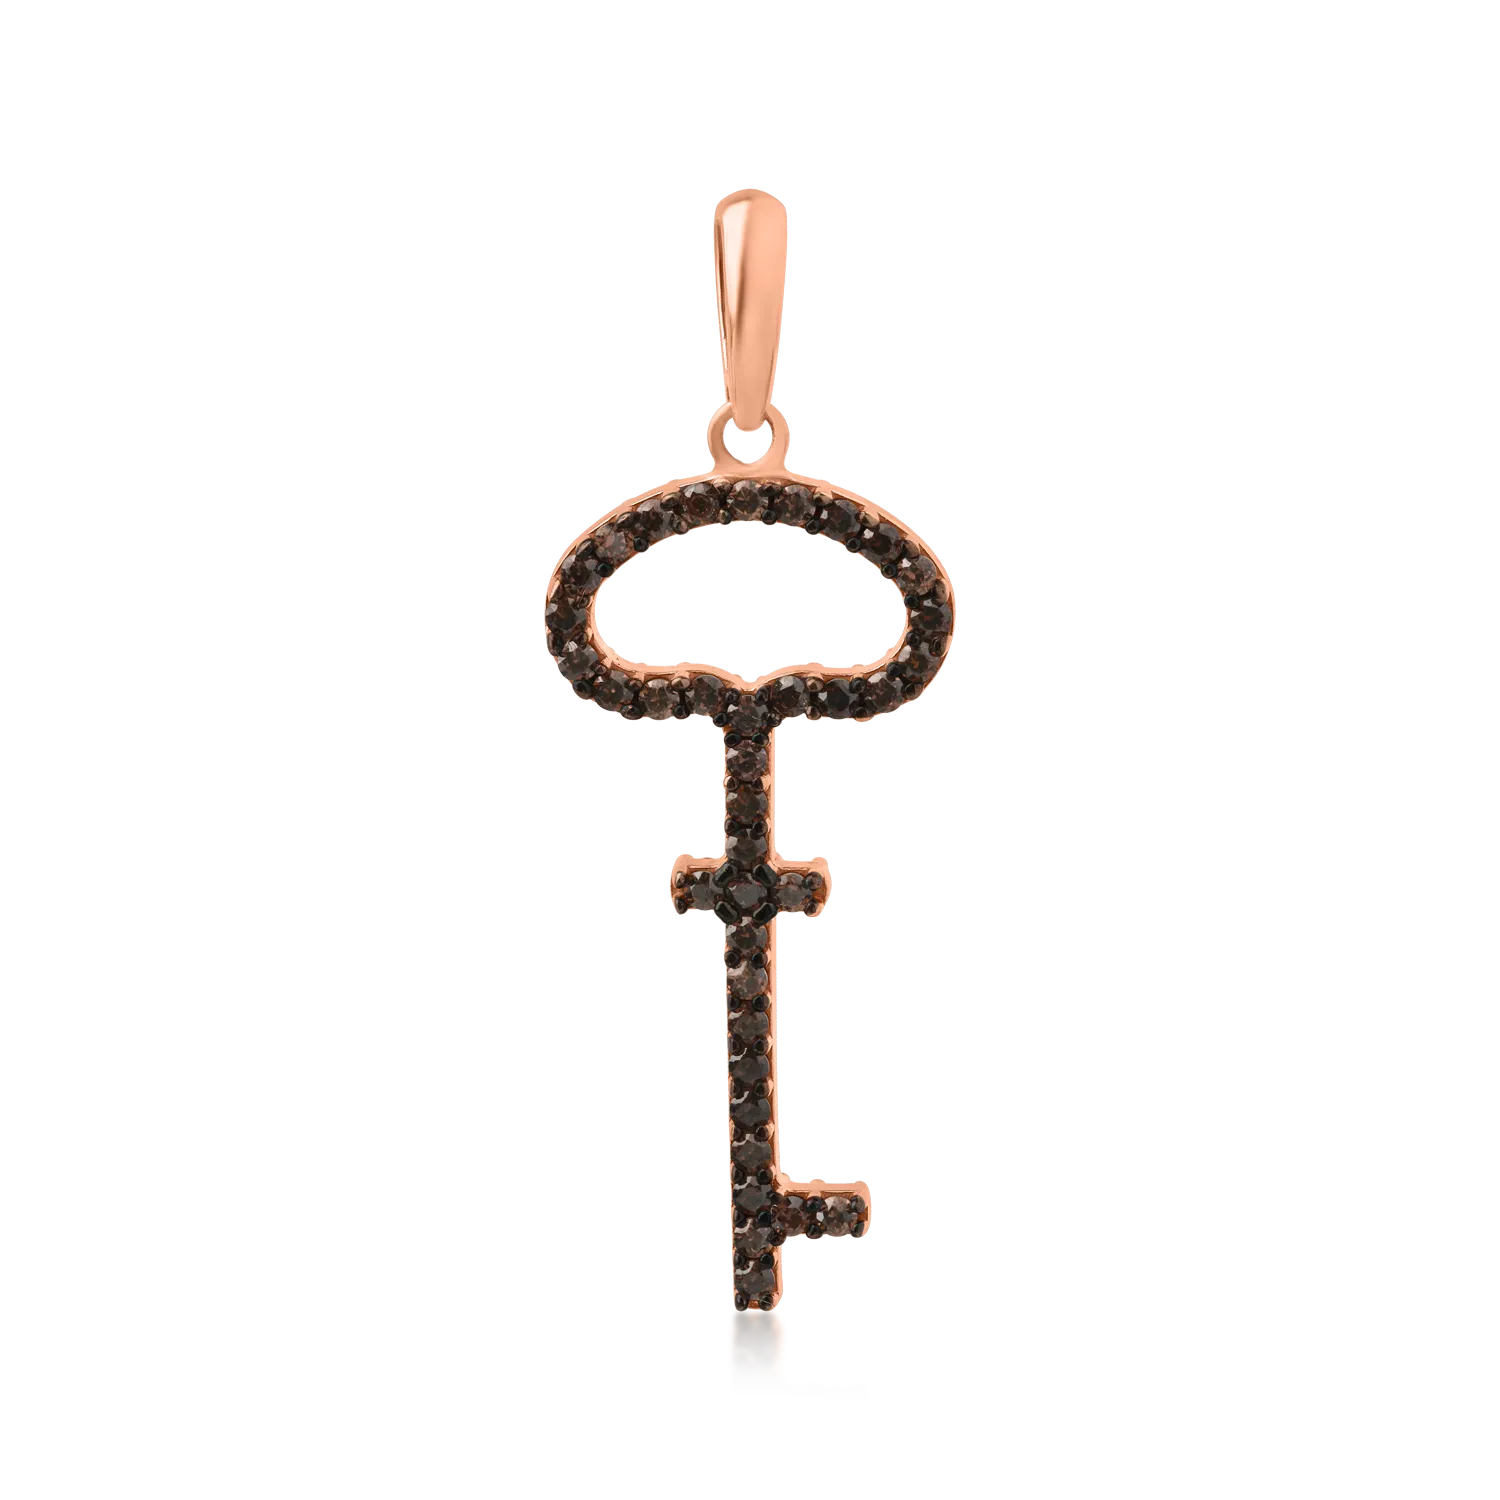 14K rose gold key pendant